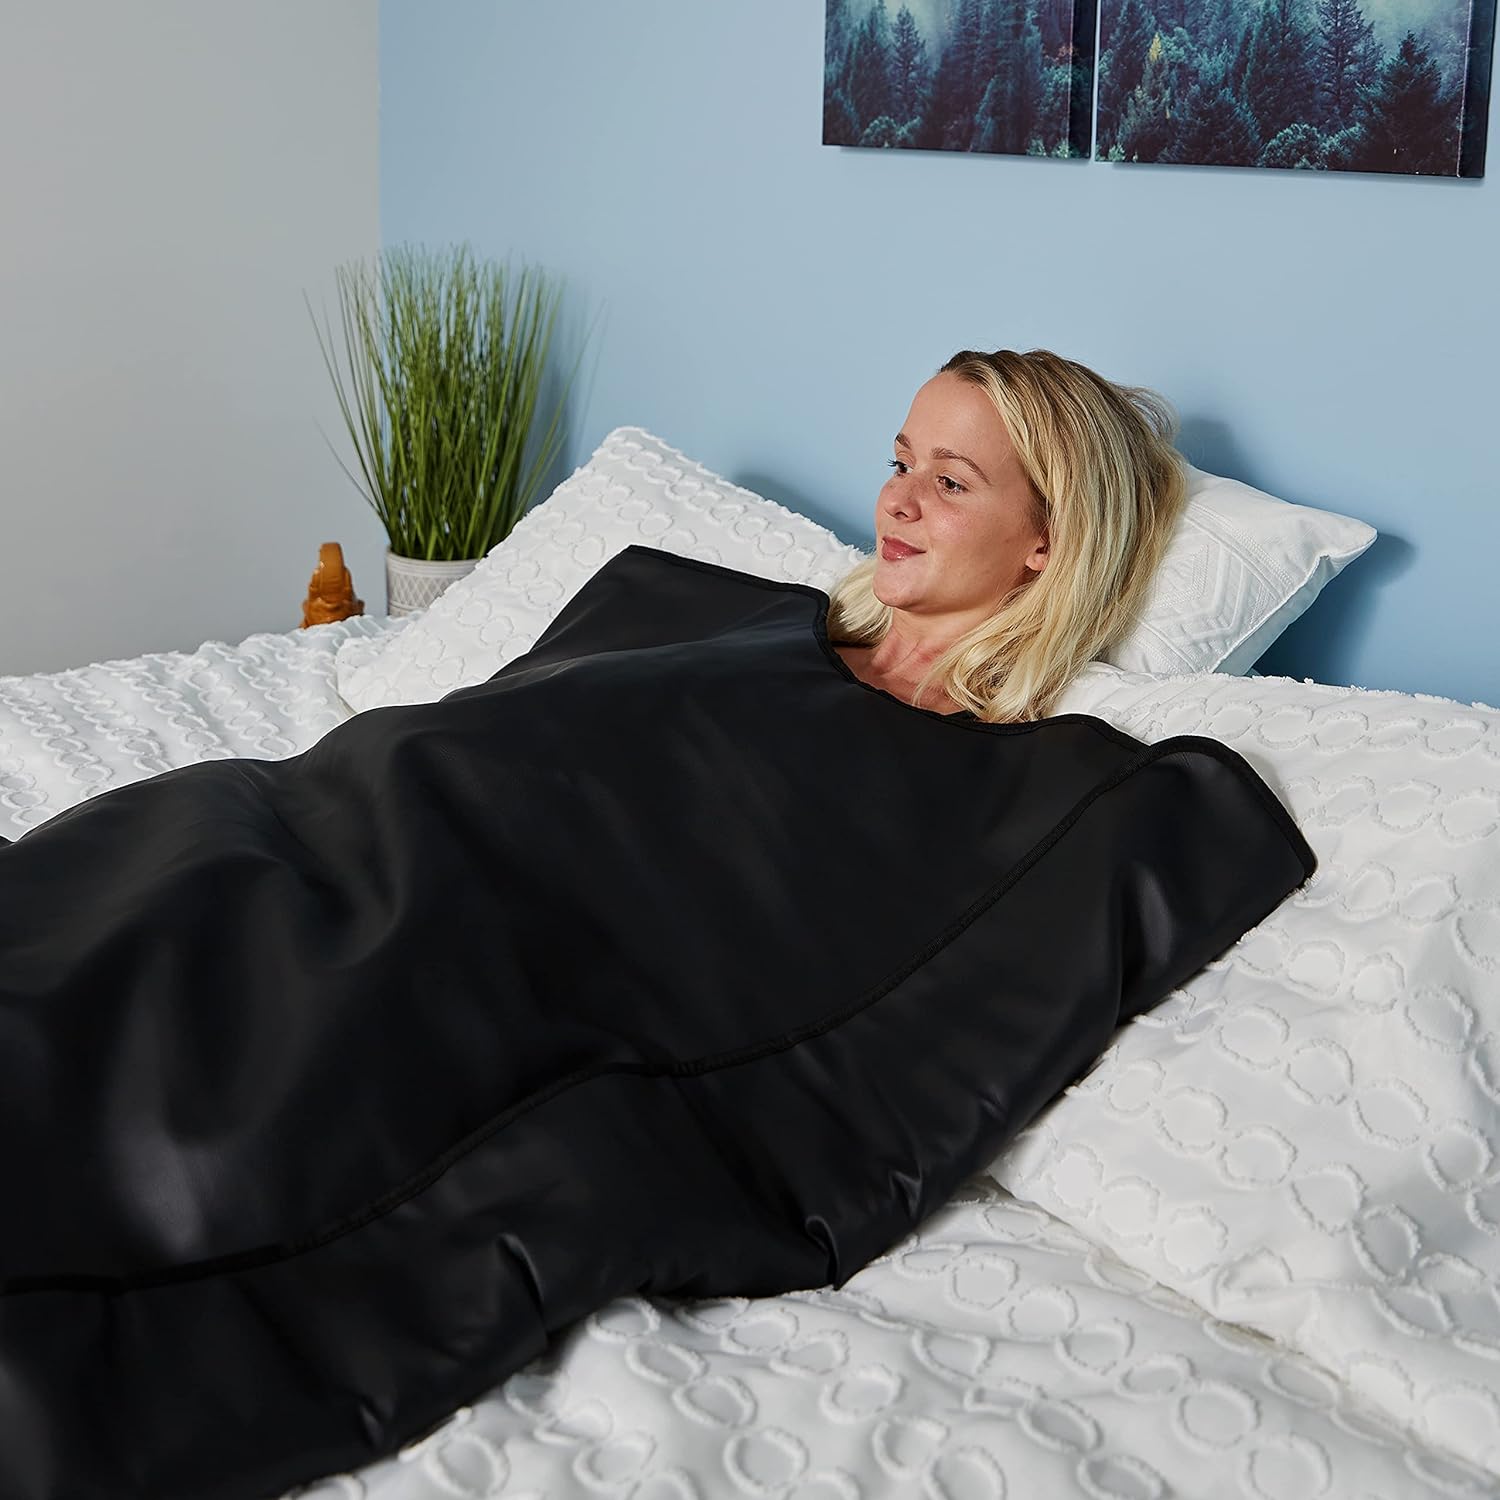 Infrarød Saunatæppe fra arctic recovery bruges af en dame der ligger i sin seng